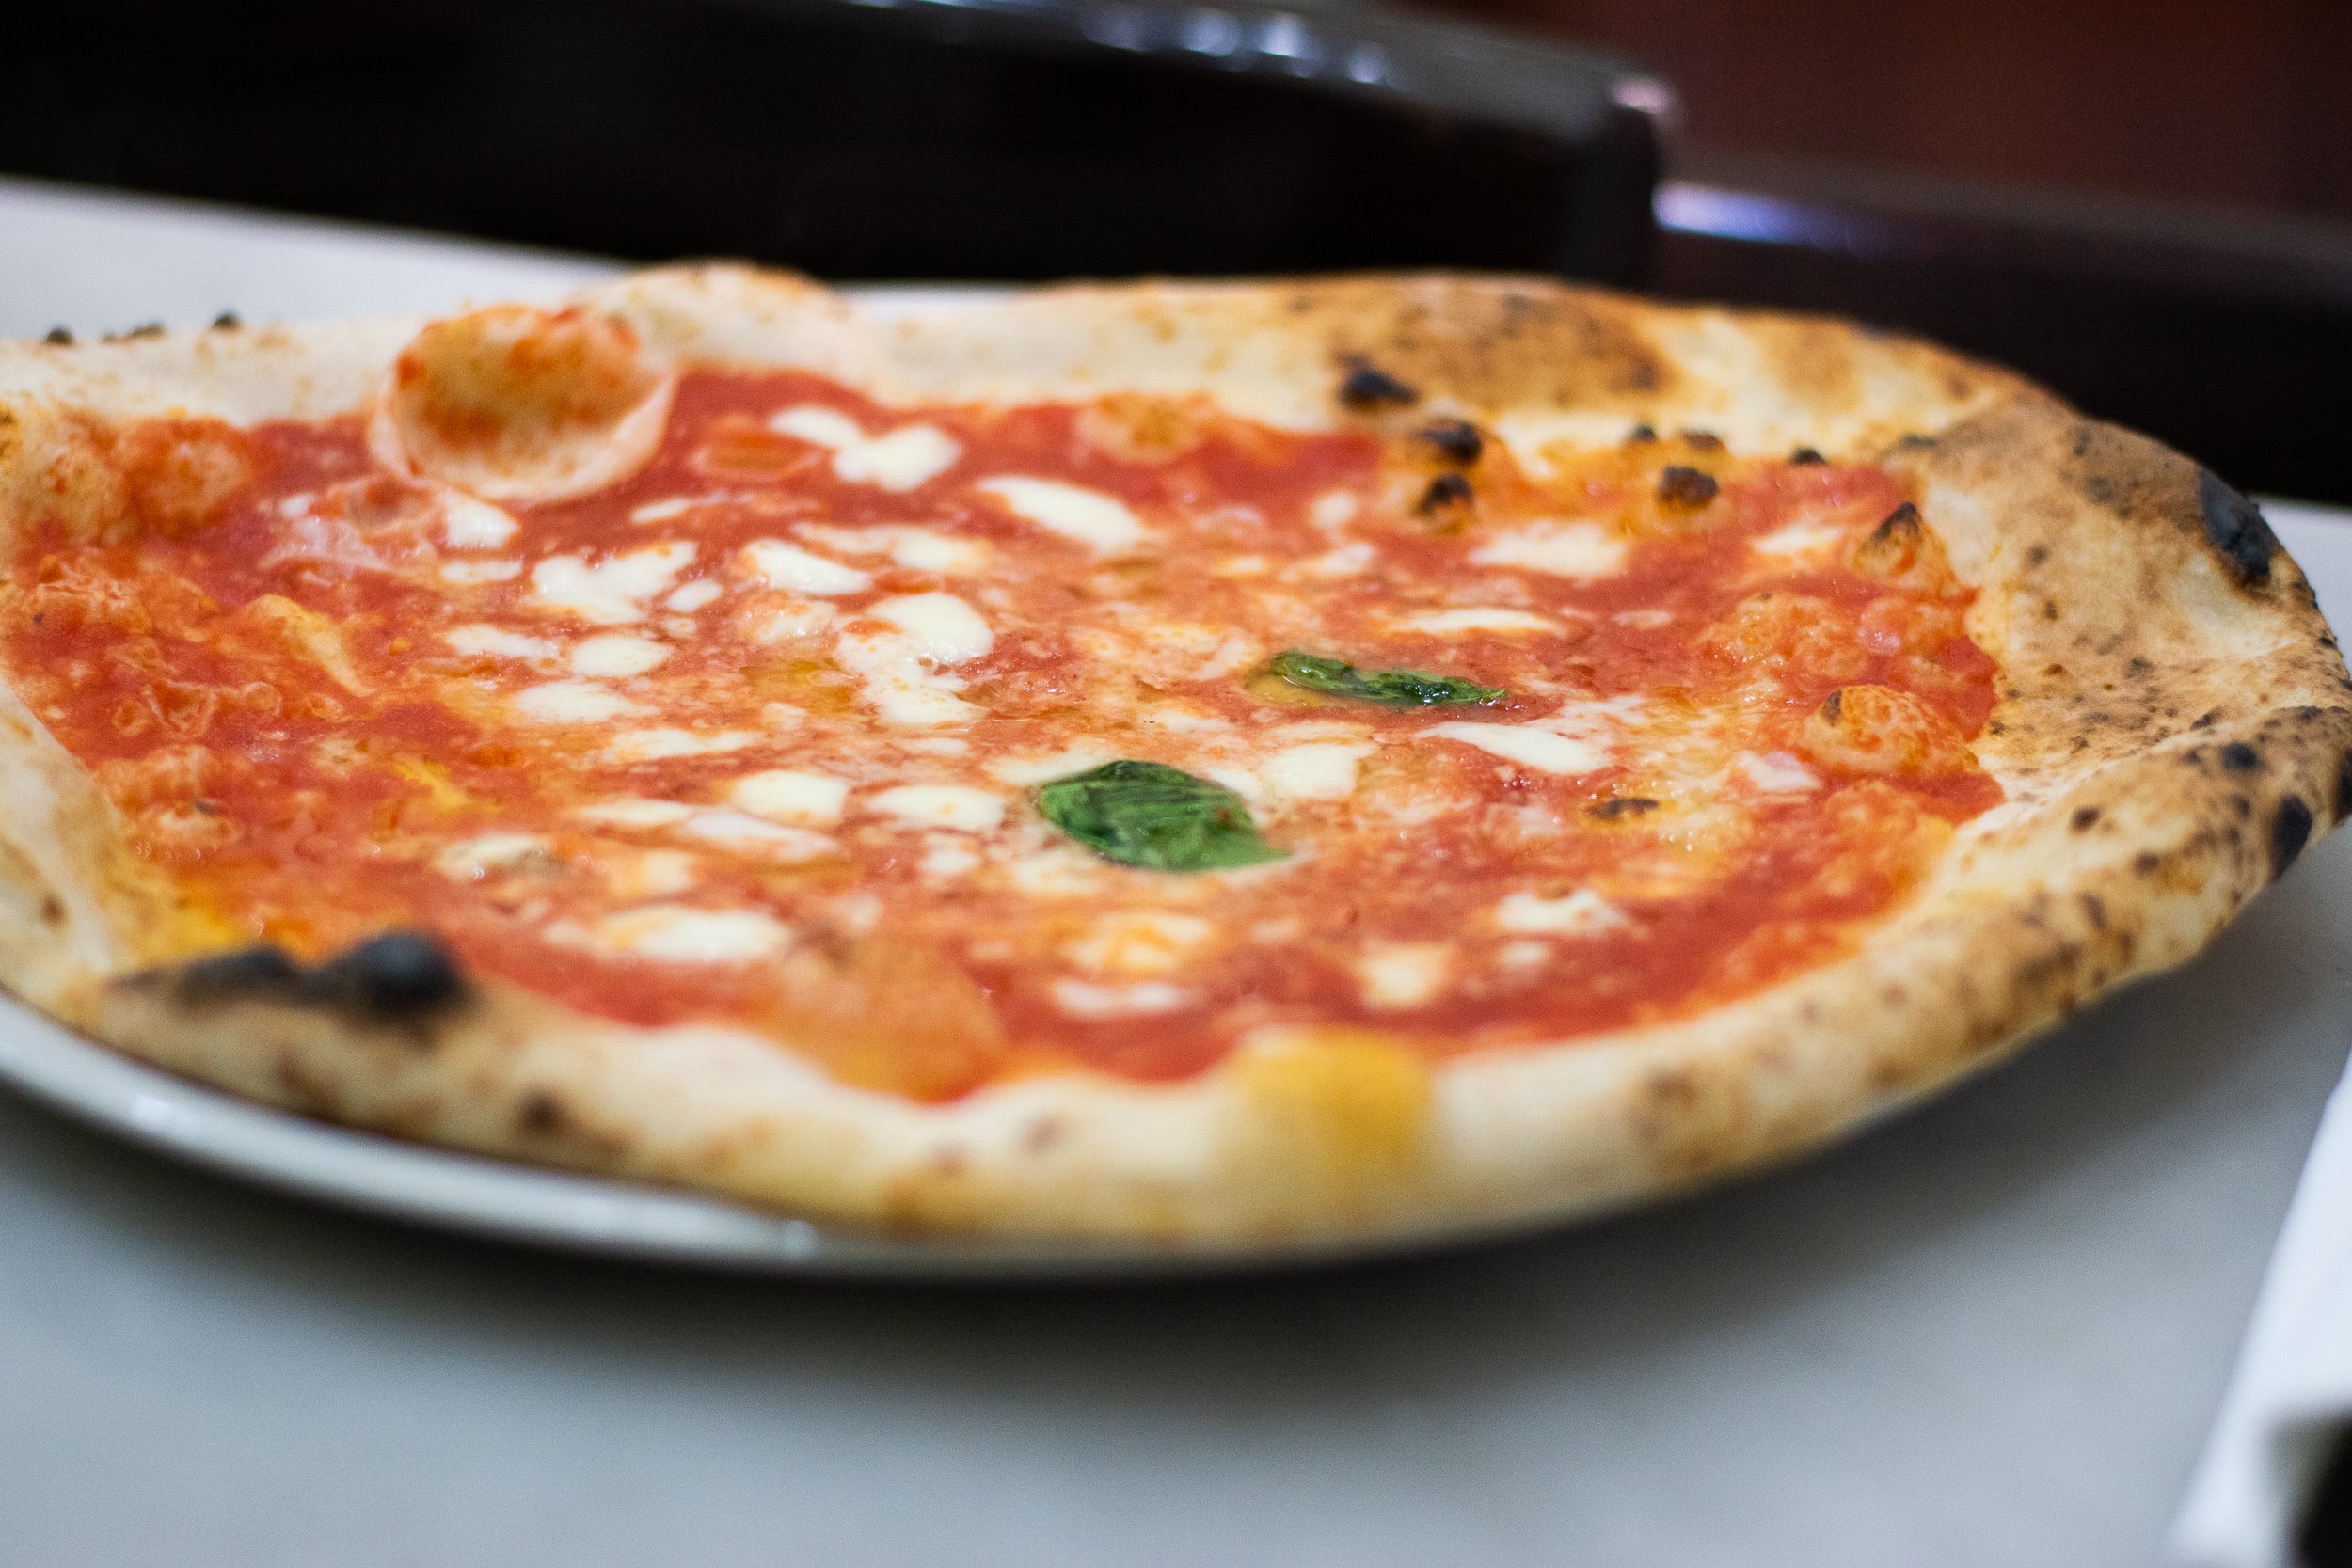 bonci pizzarium reviews - Margherita